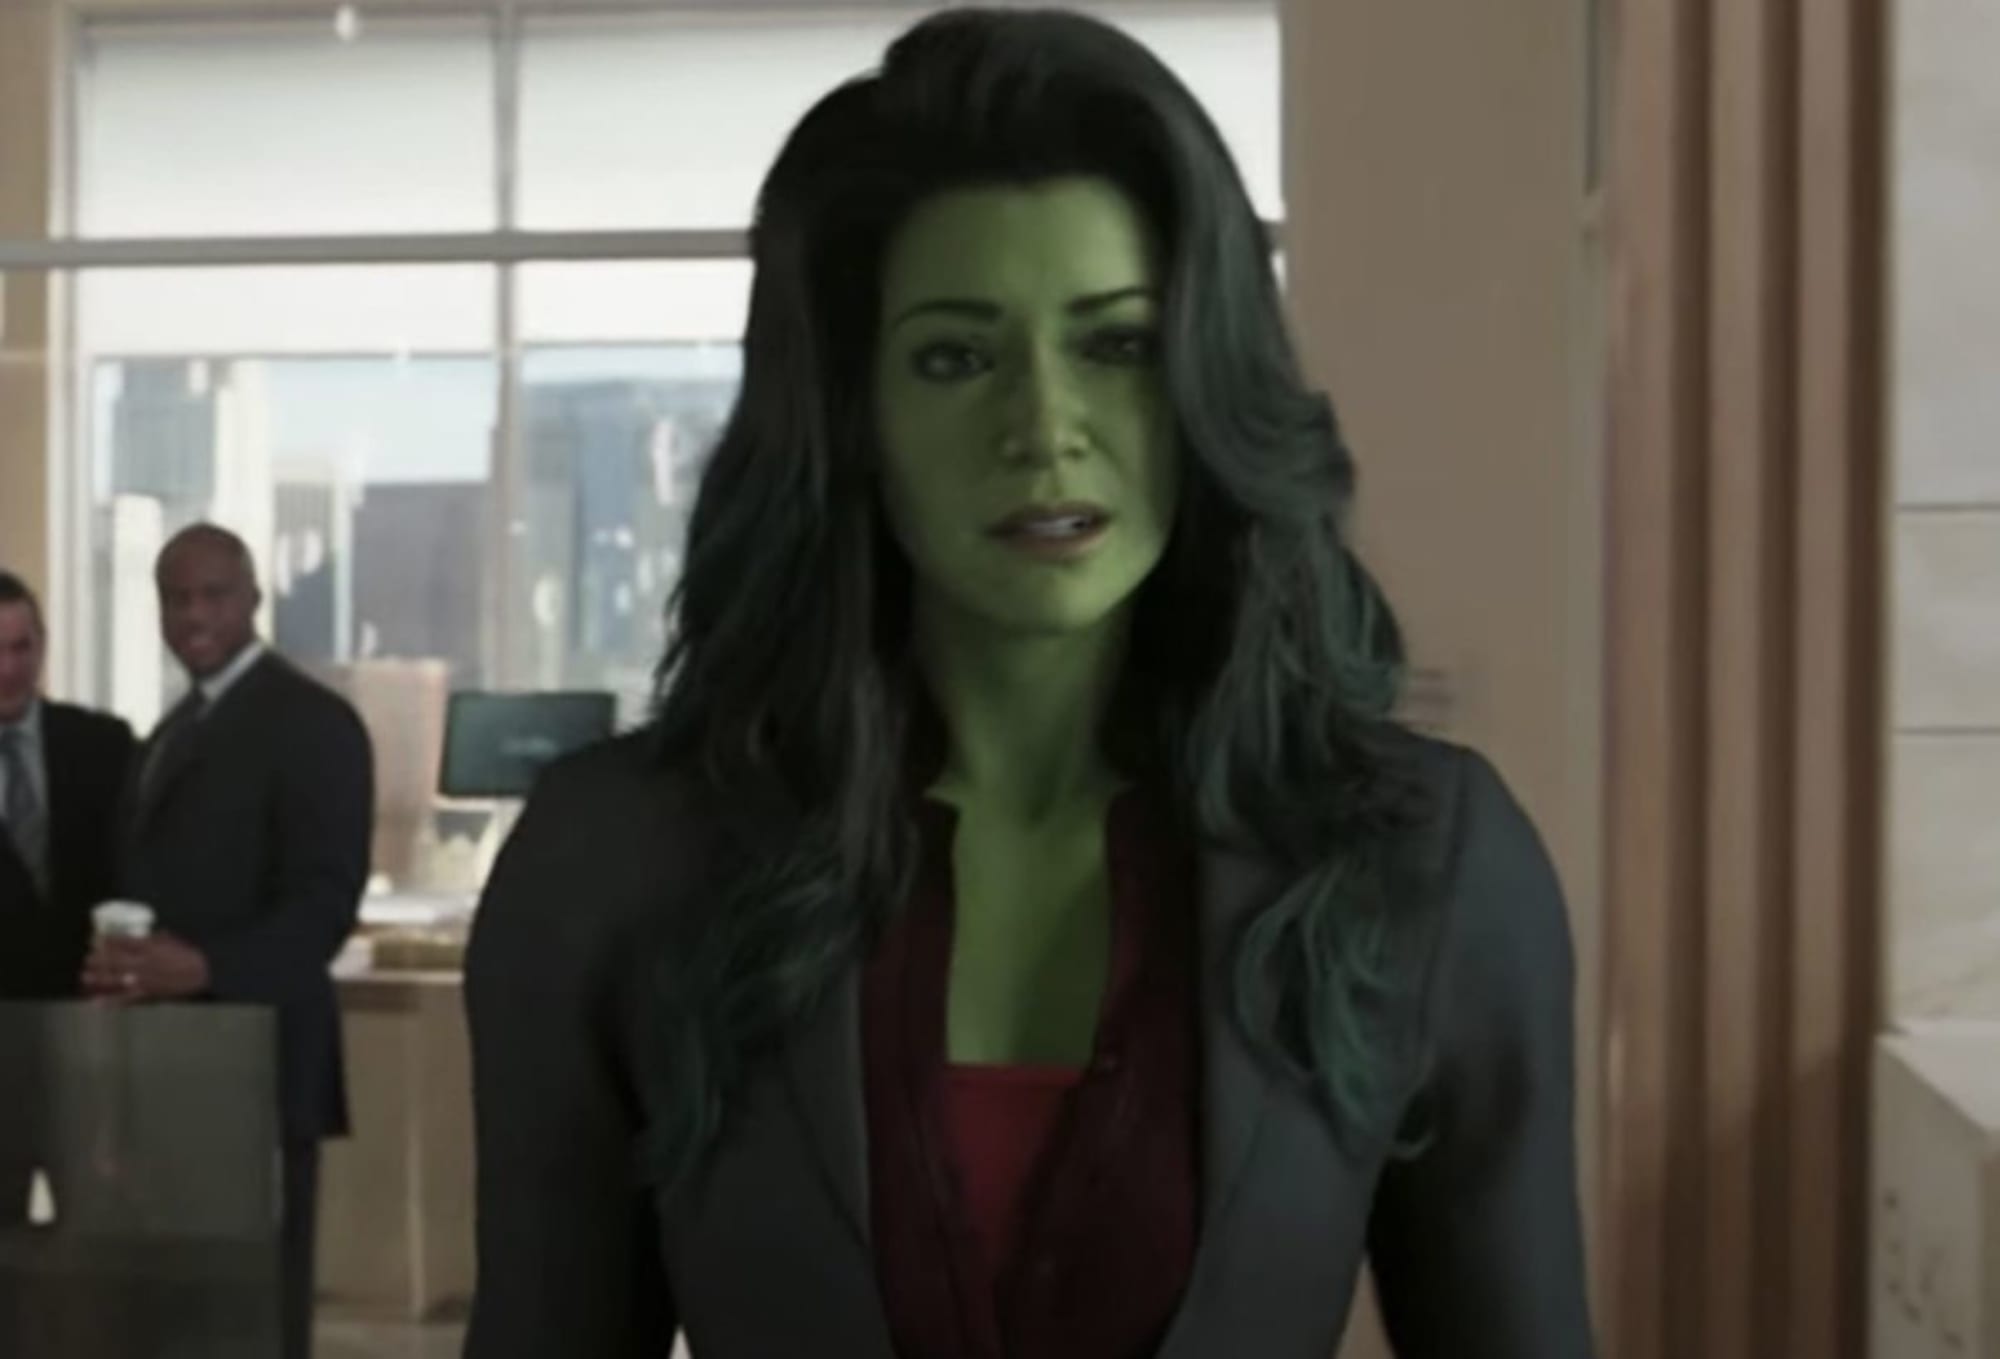 Tatiana Maslany Goes Green in Marvel's 'She Hulk' Trailer